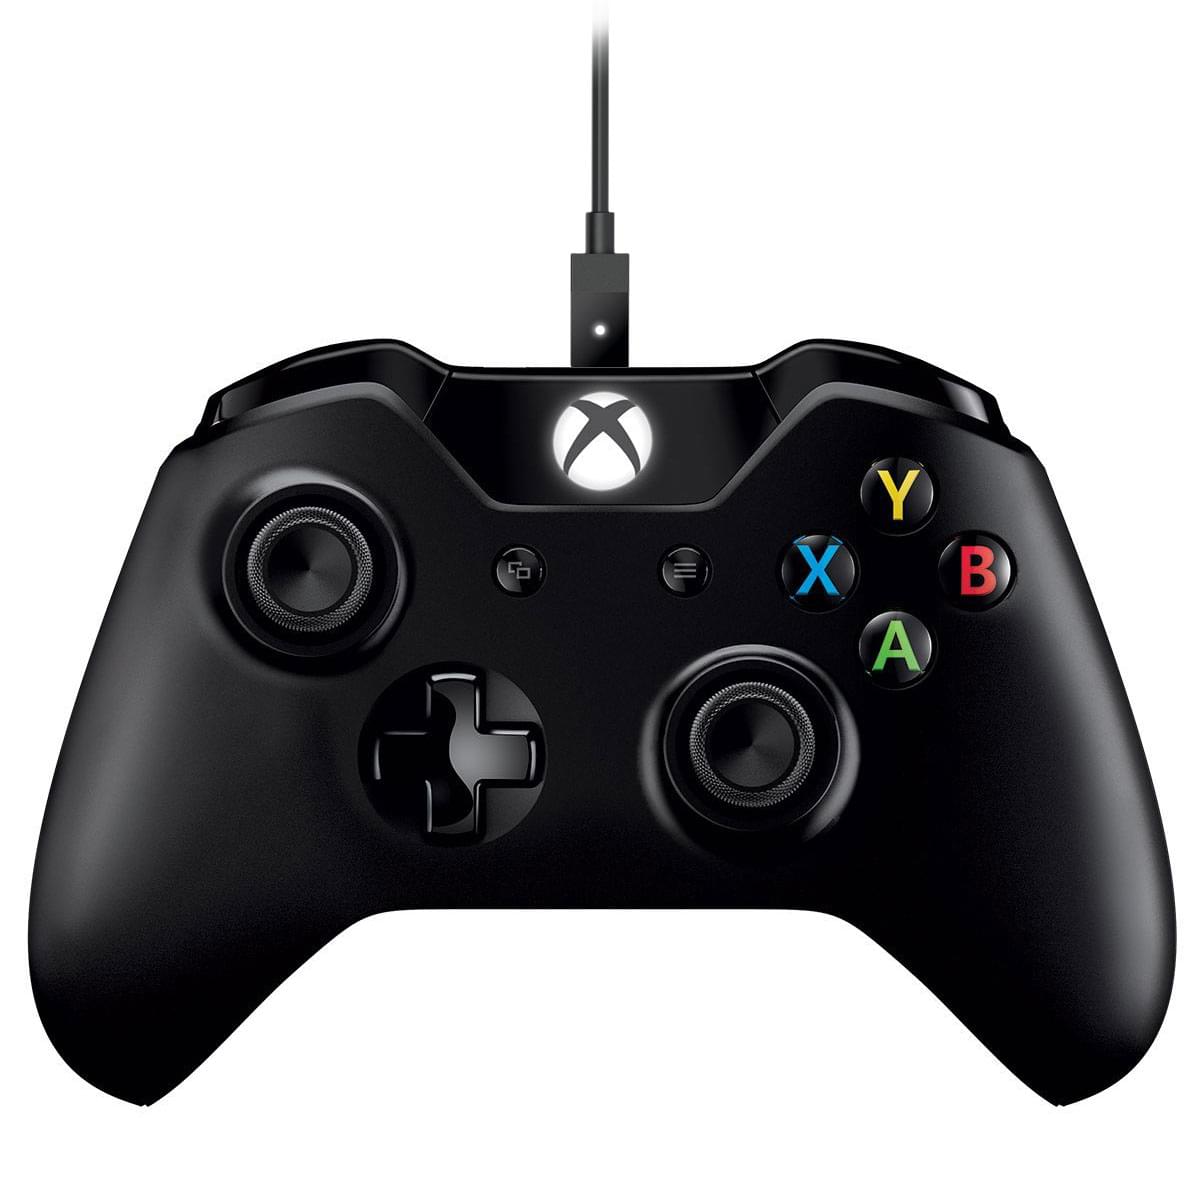 Microsoft Manette Xbox One sans fil + Cable pour PC - Périphérique de jeu - 0